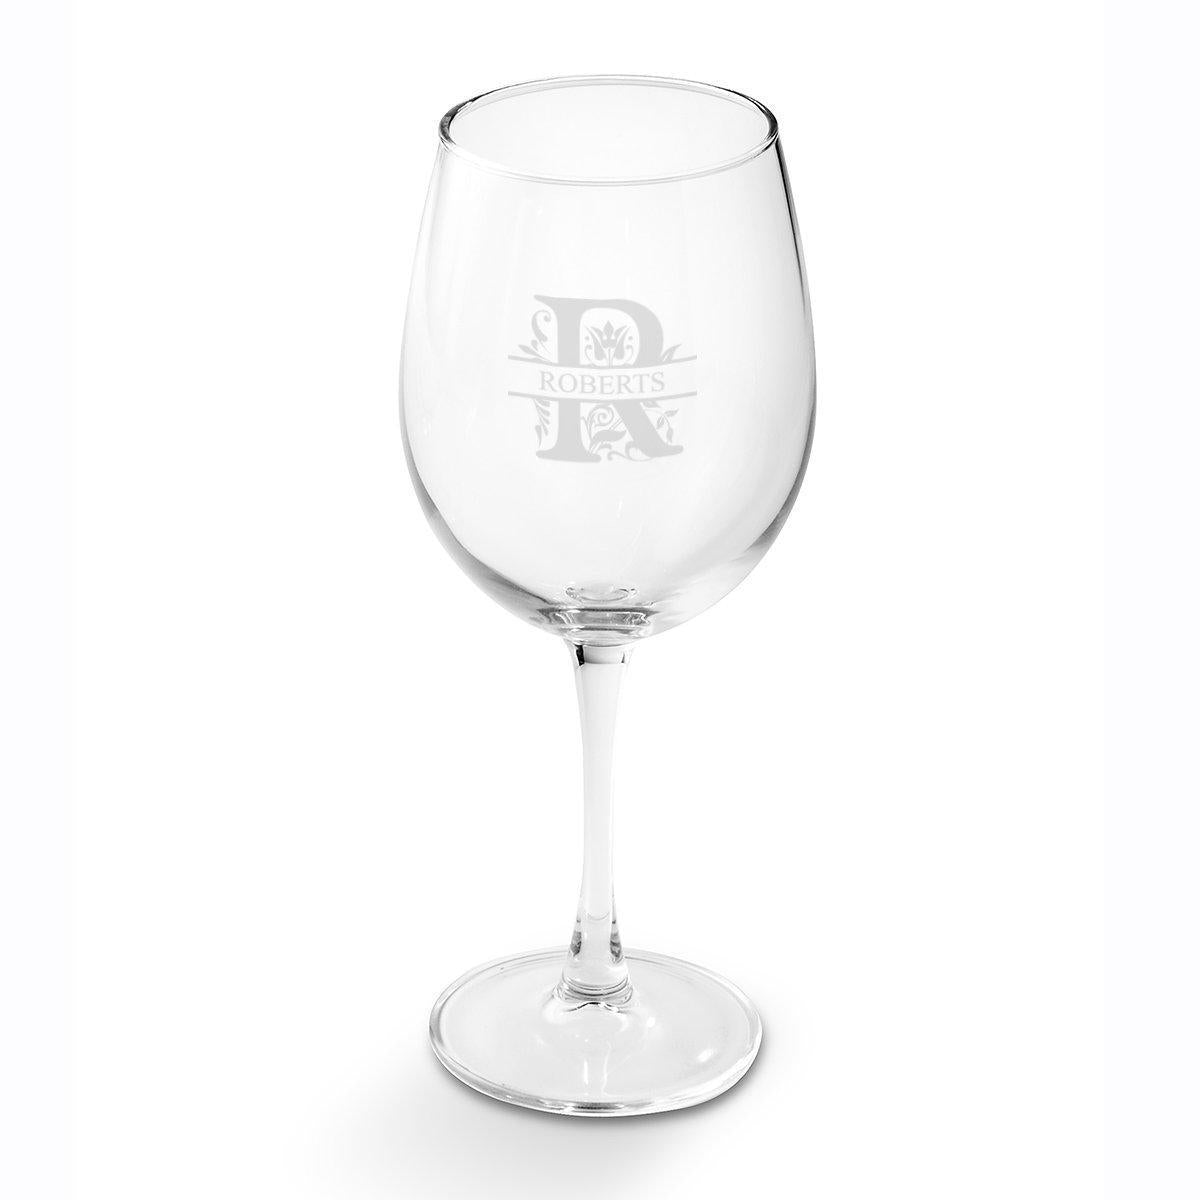 Personalized Wine Glasses - White Wine - Glass - 19 oz.